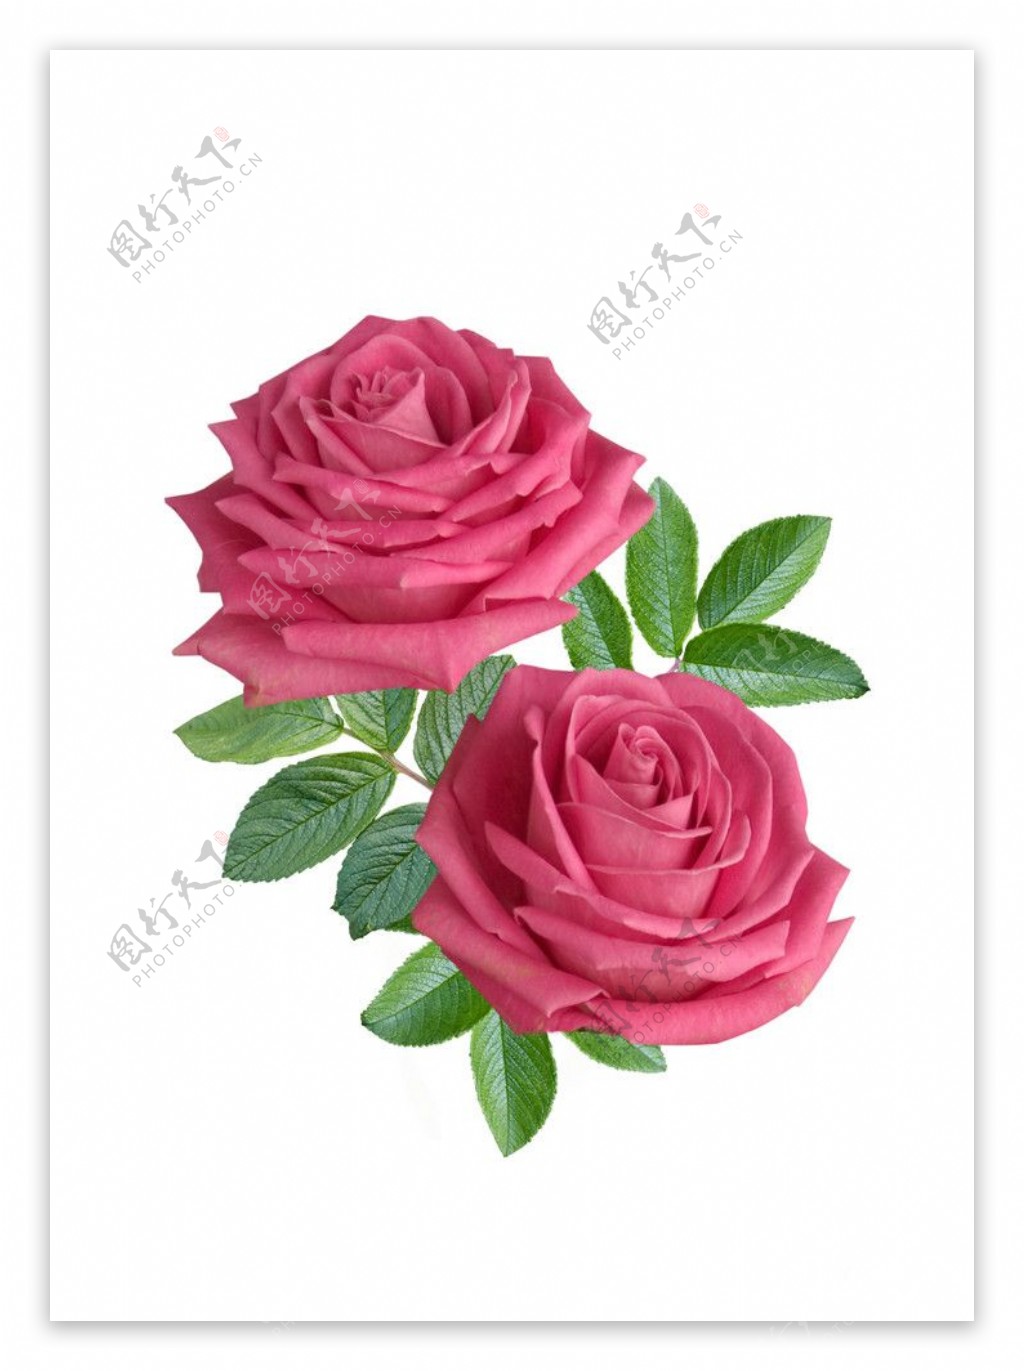 娇艳的红色玫瑰花图片